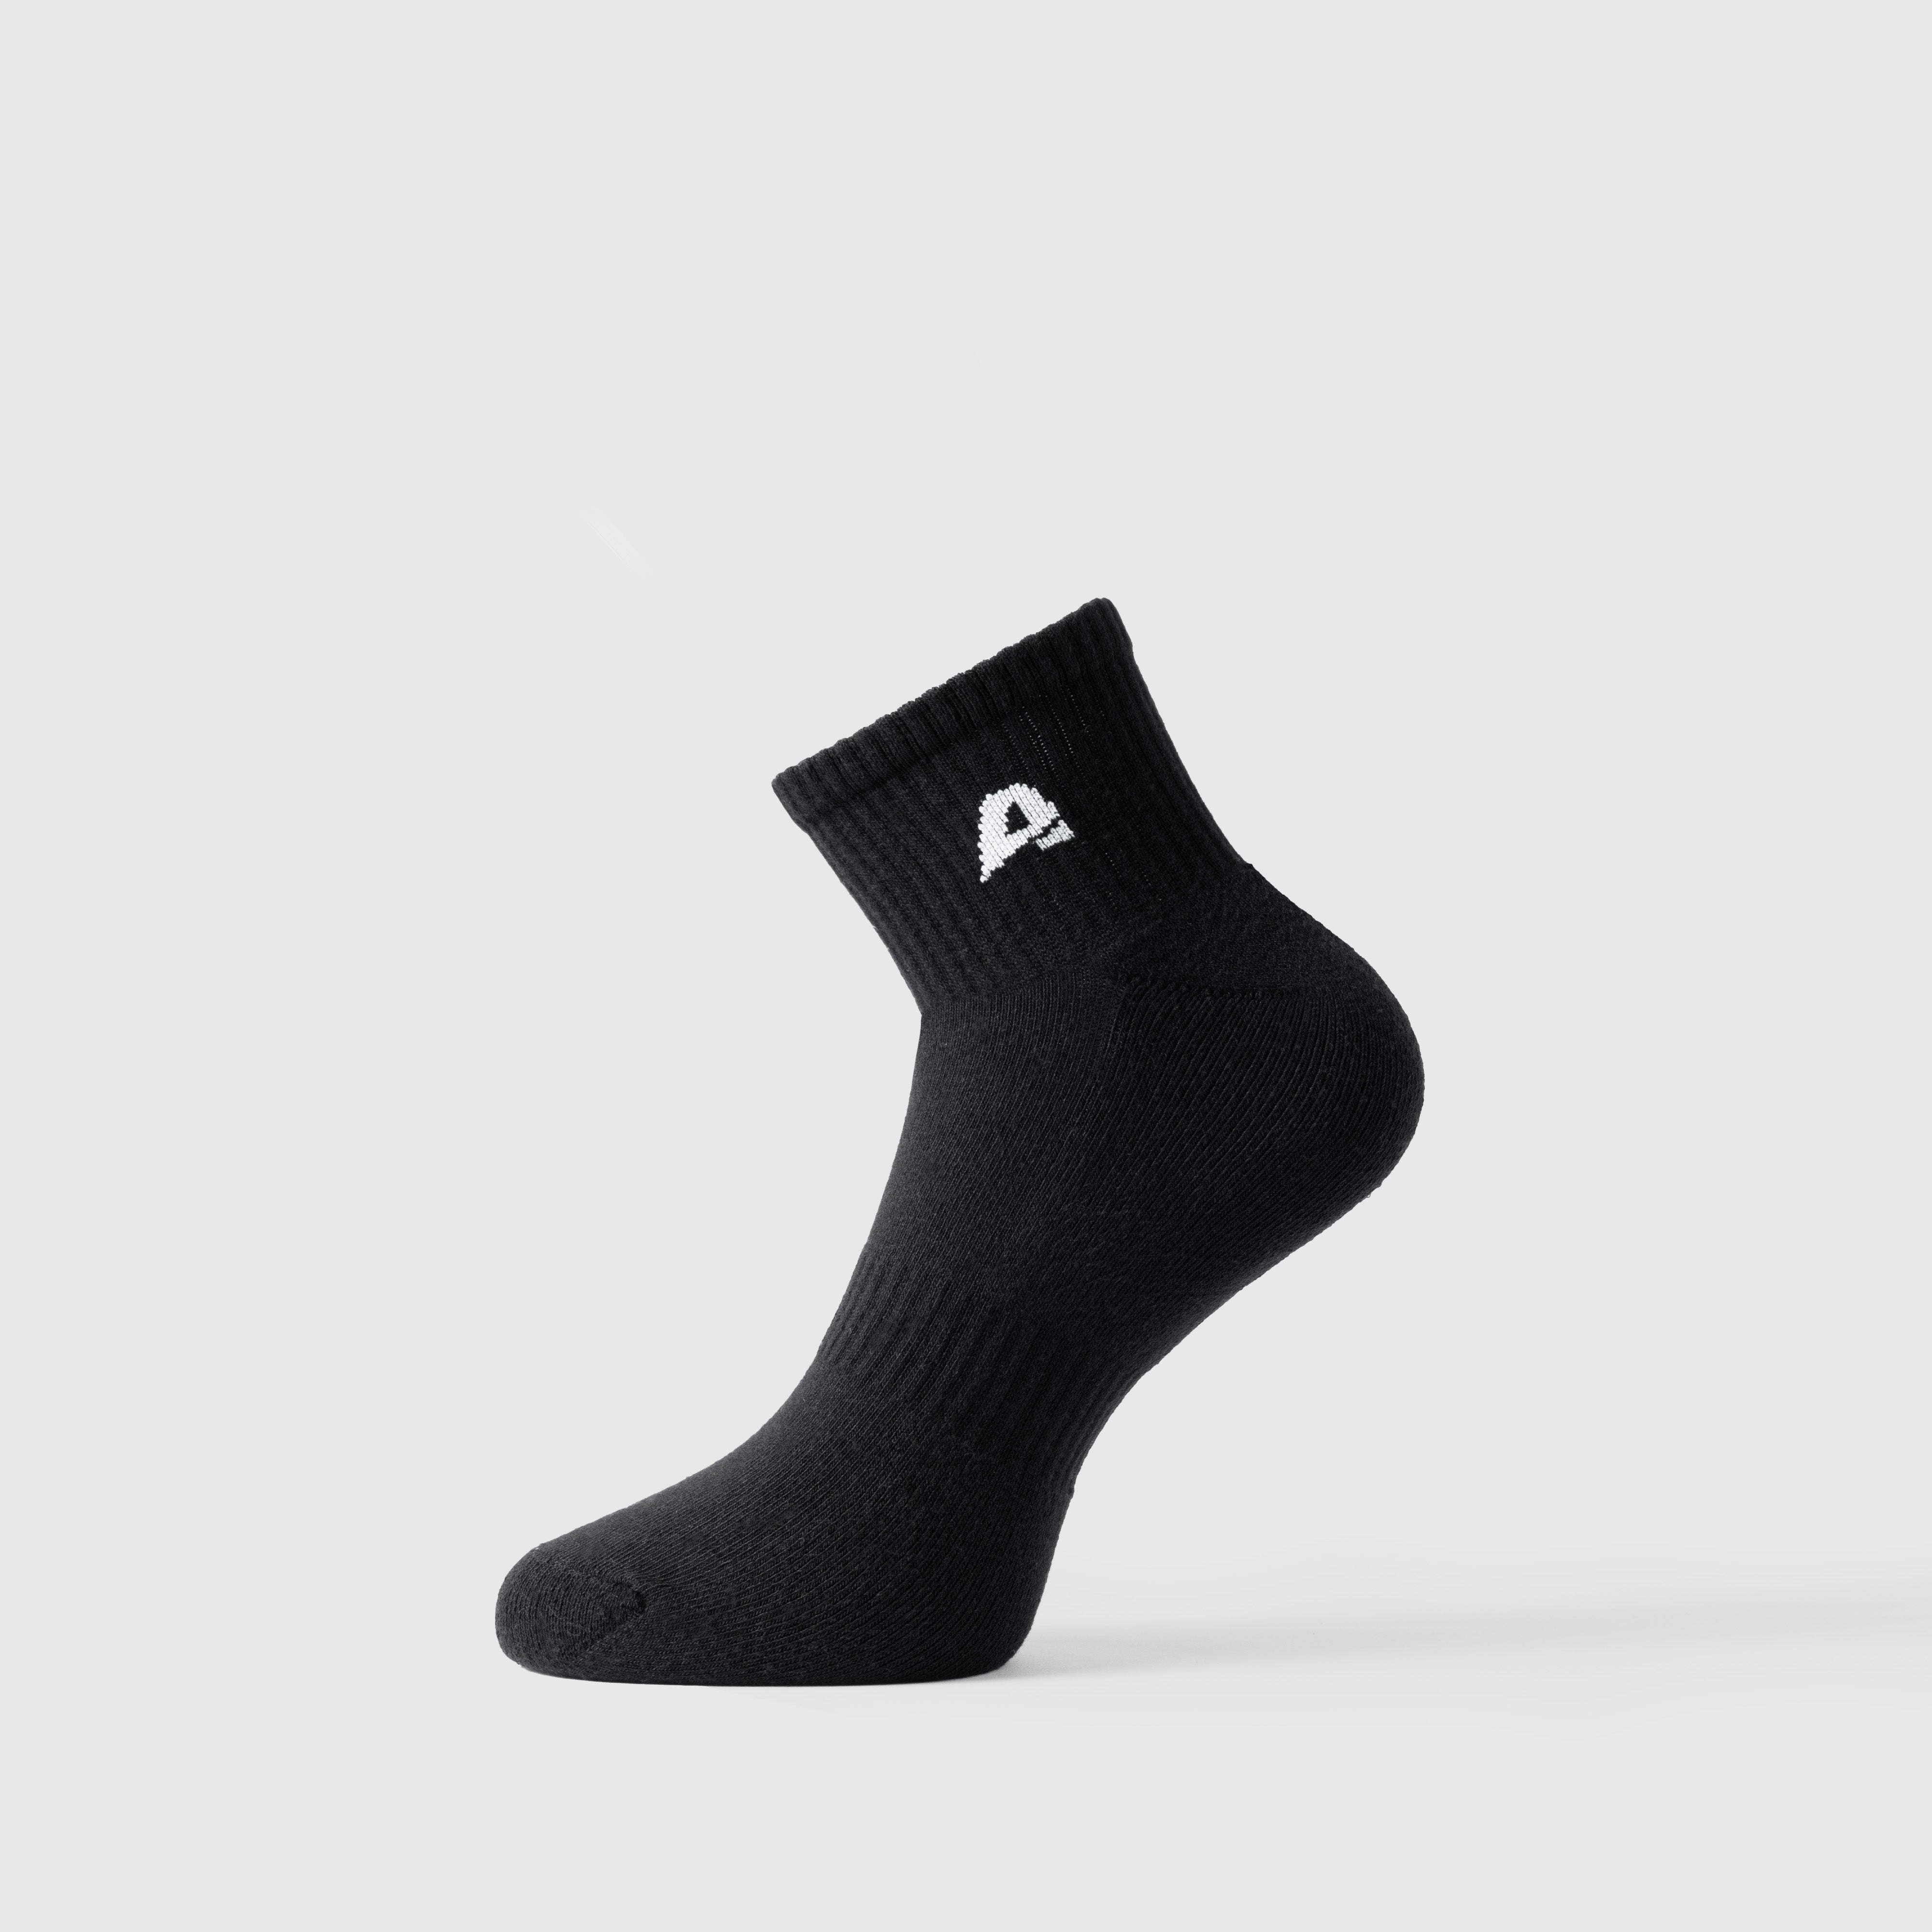 2-pack Artin Socks